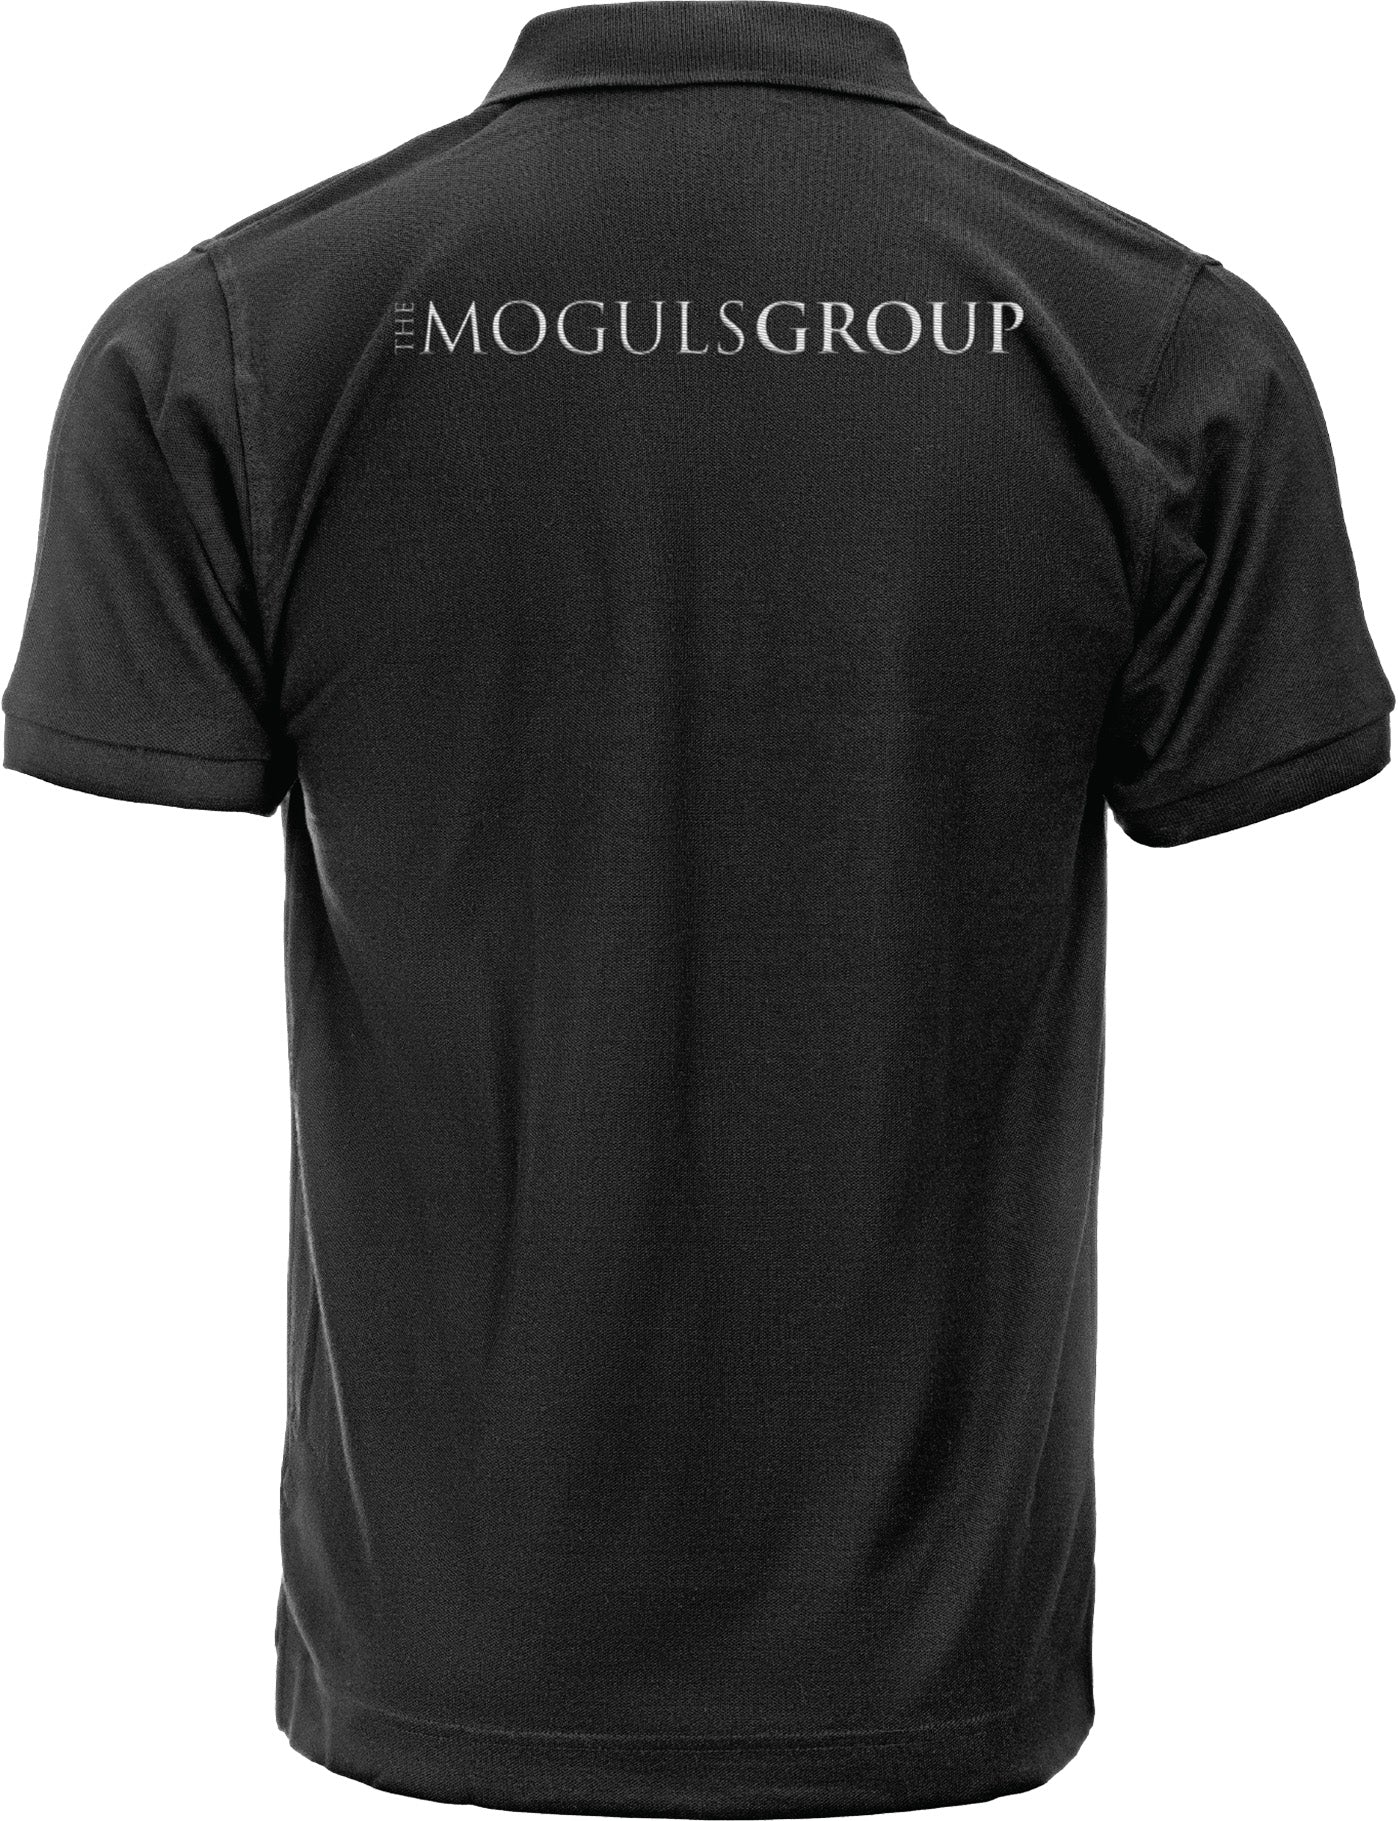 The Moguls Group Polo Shirt